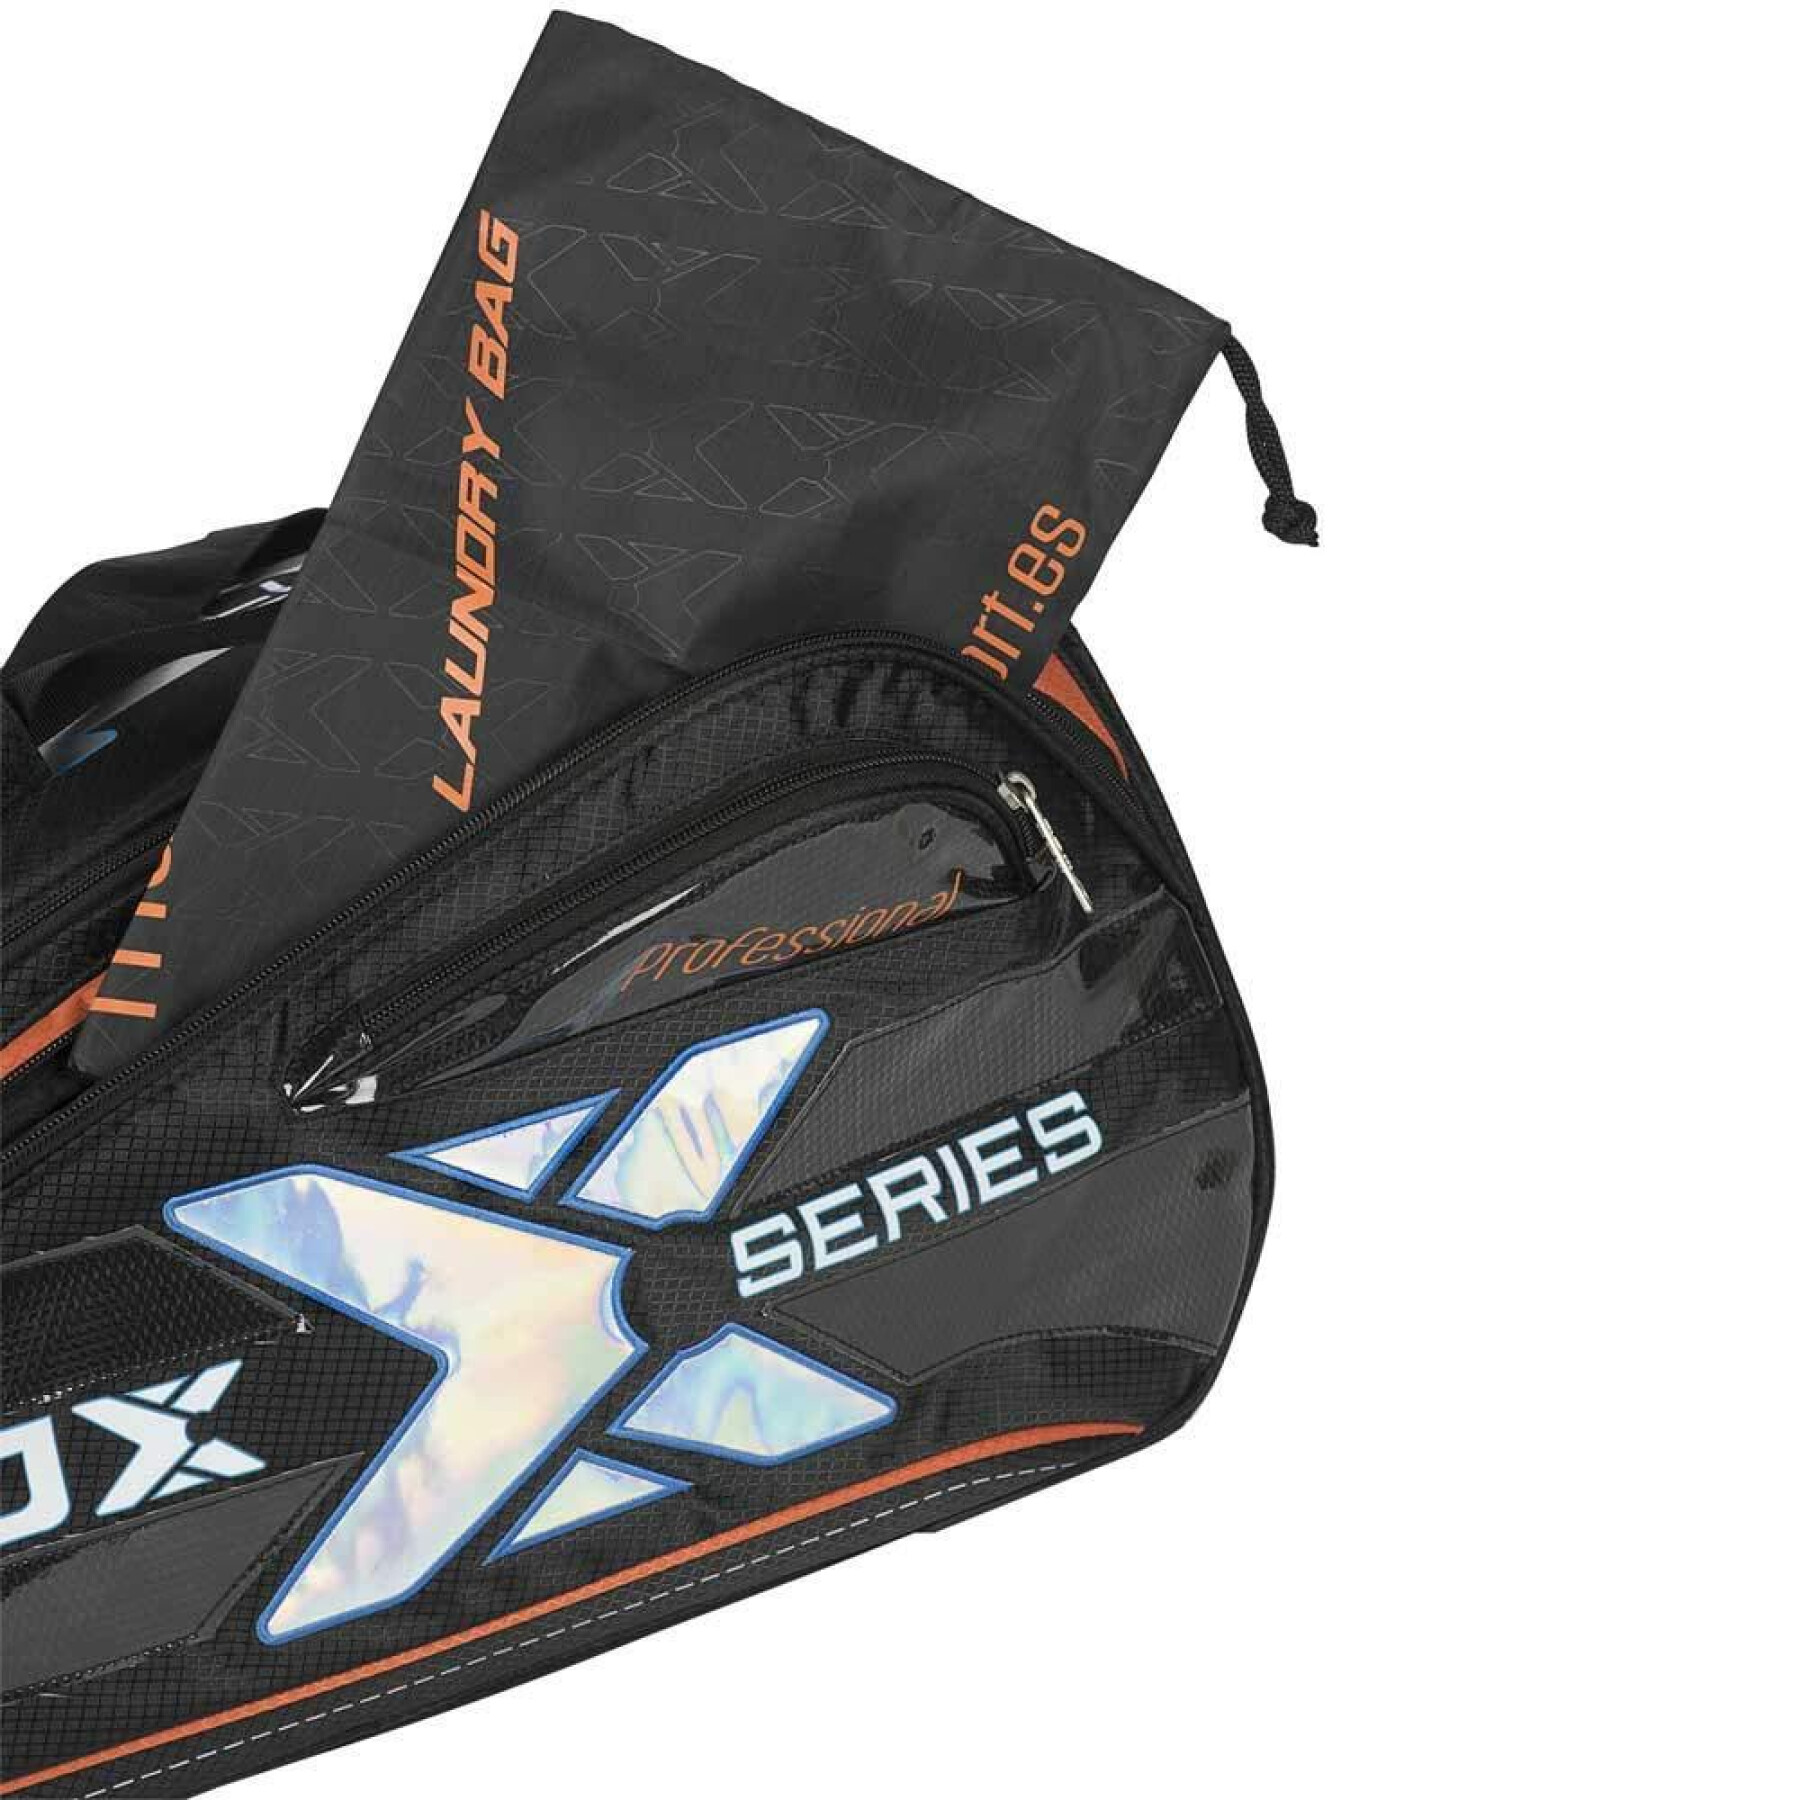 Racket bag from padel Nox Team ML10